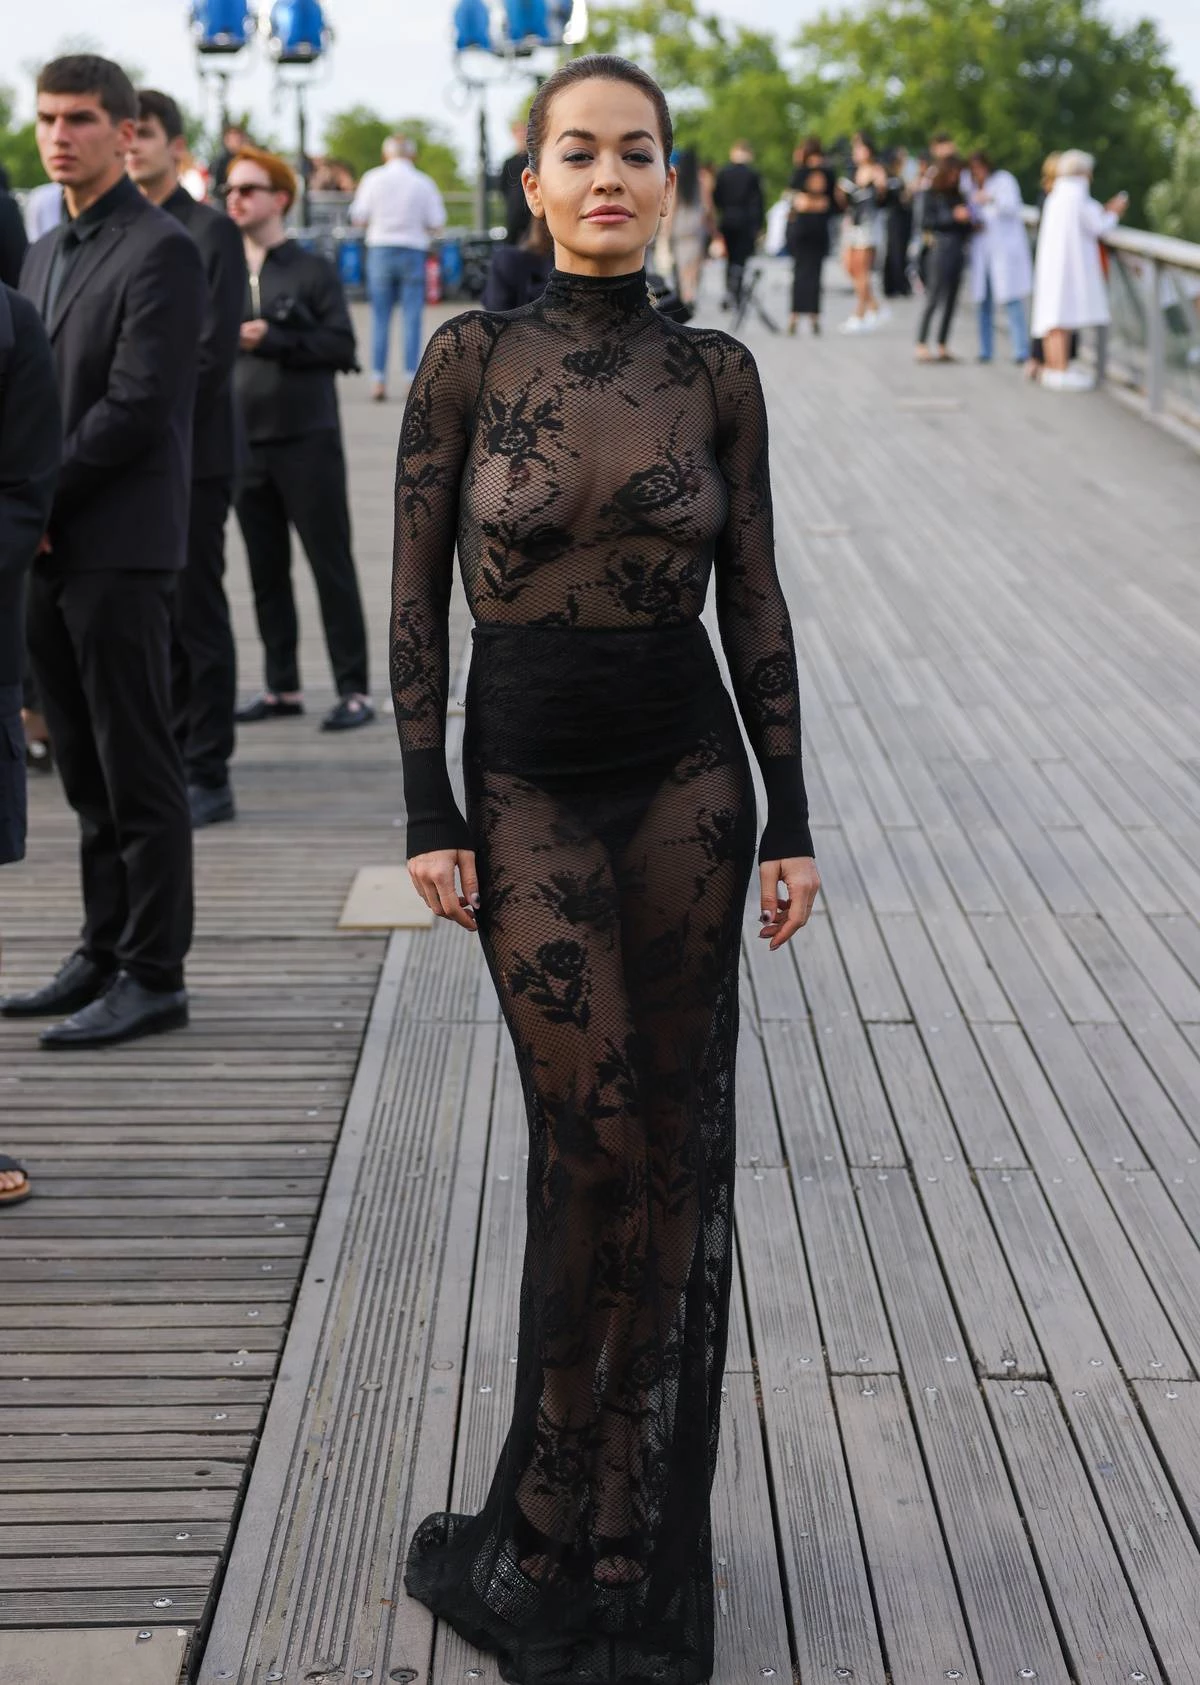 Ріта Ора в "голій" сукні під час показу Alaïa в Парижі